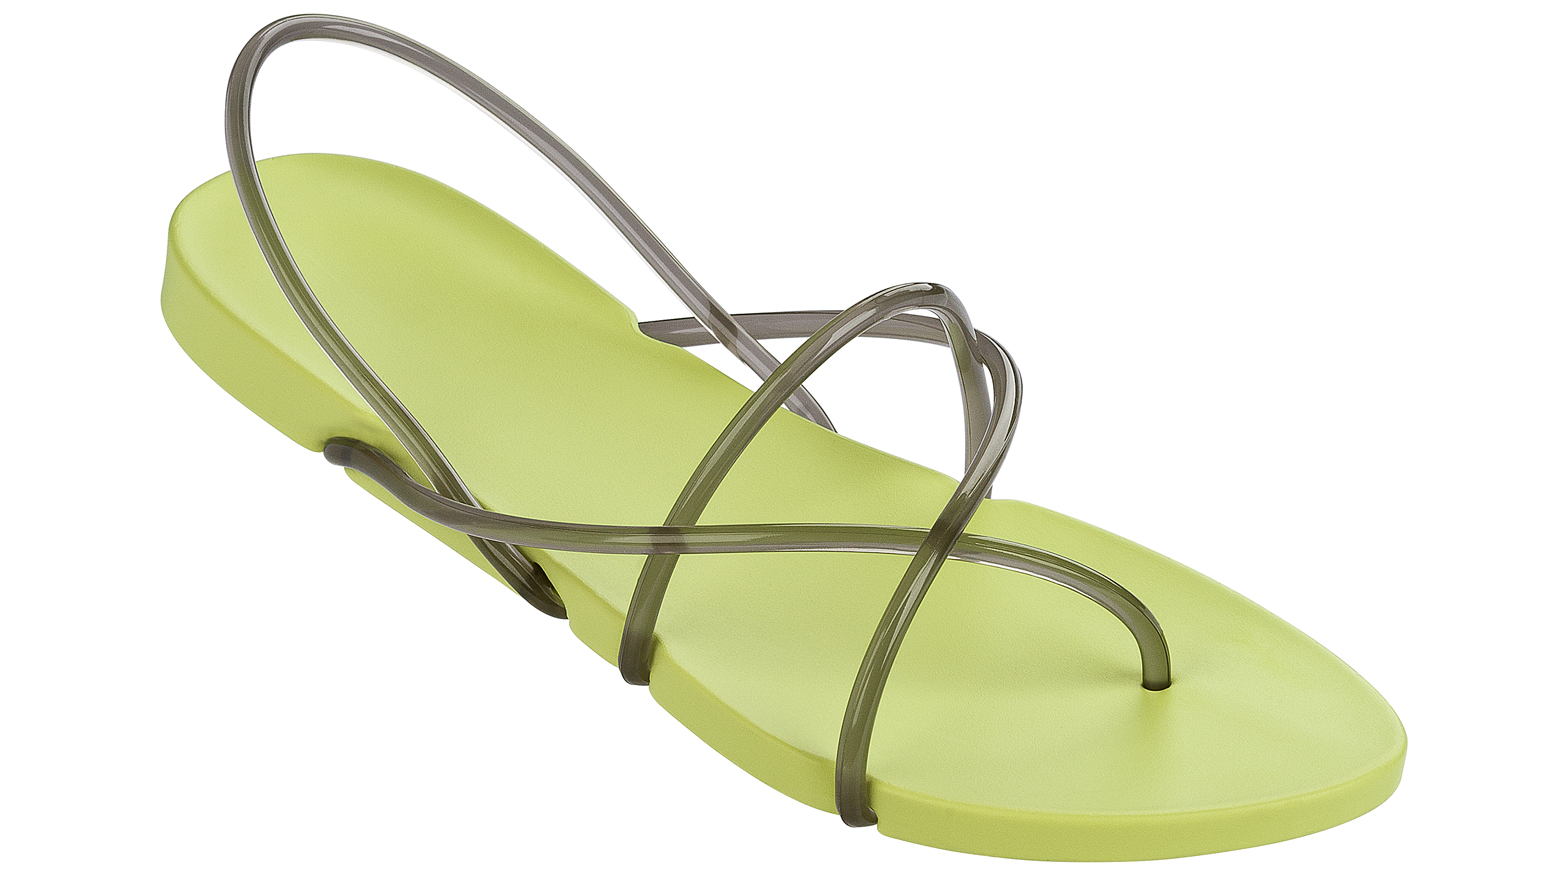 verlegen voor eeuwig een kopje Philippe Starck designs recyclable flip-flops for Ipanema